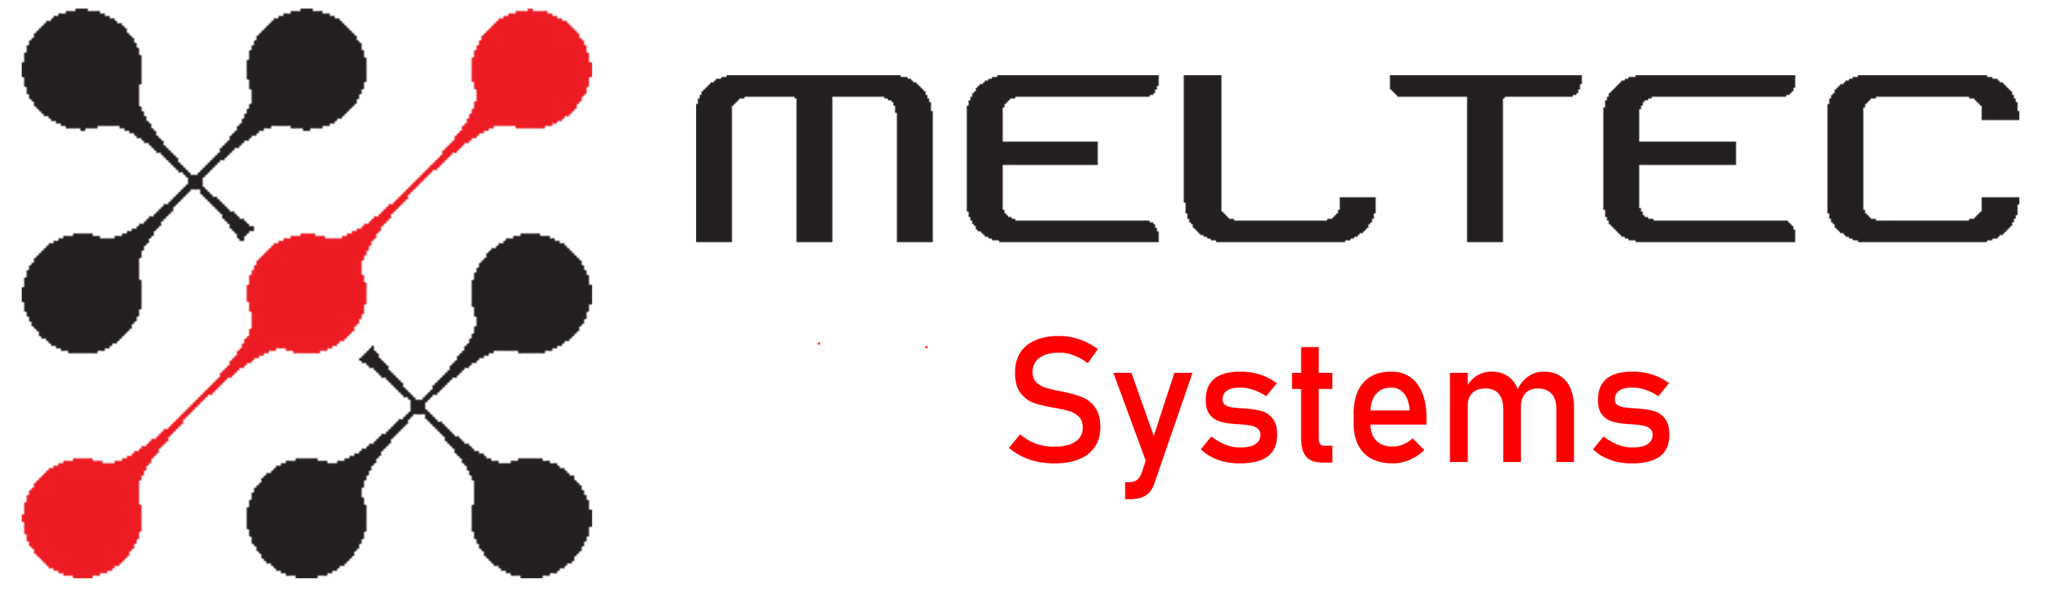 Afficher les images du fabricant MELTEC Systems